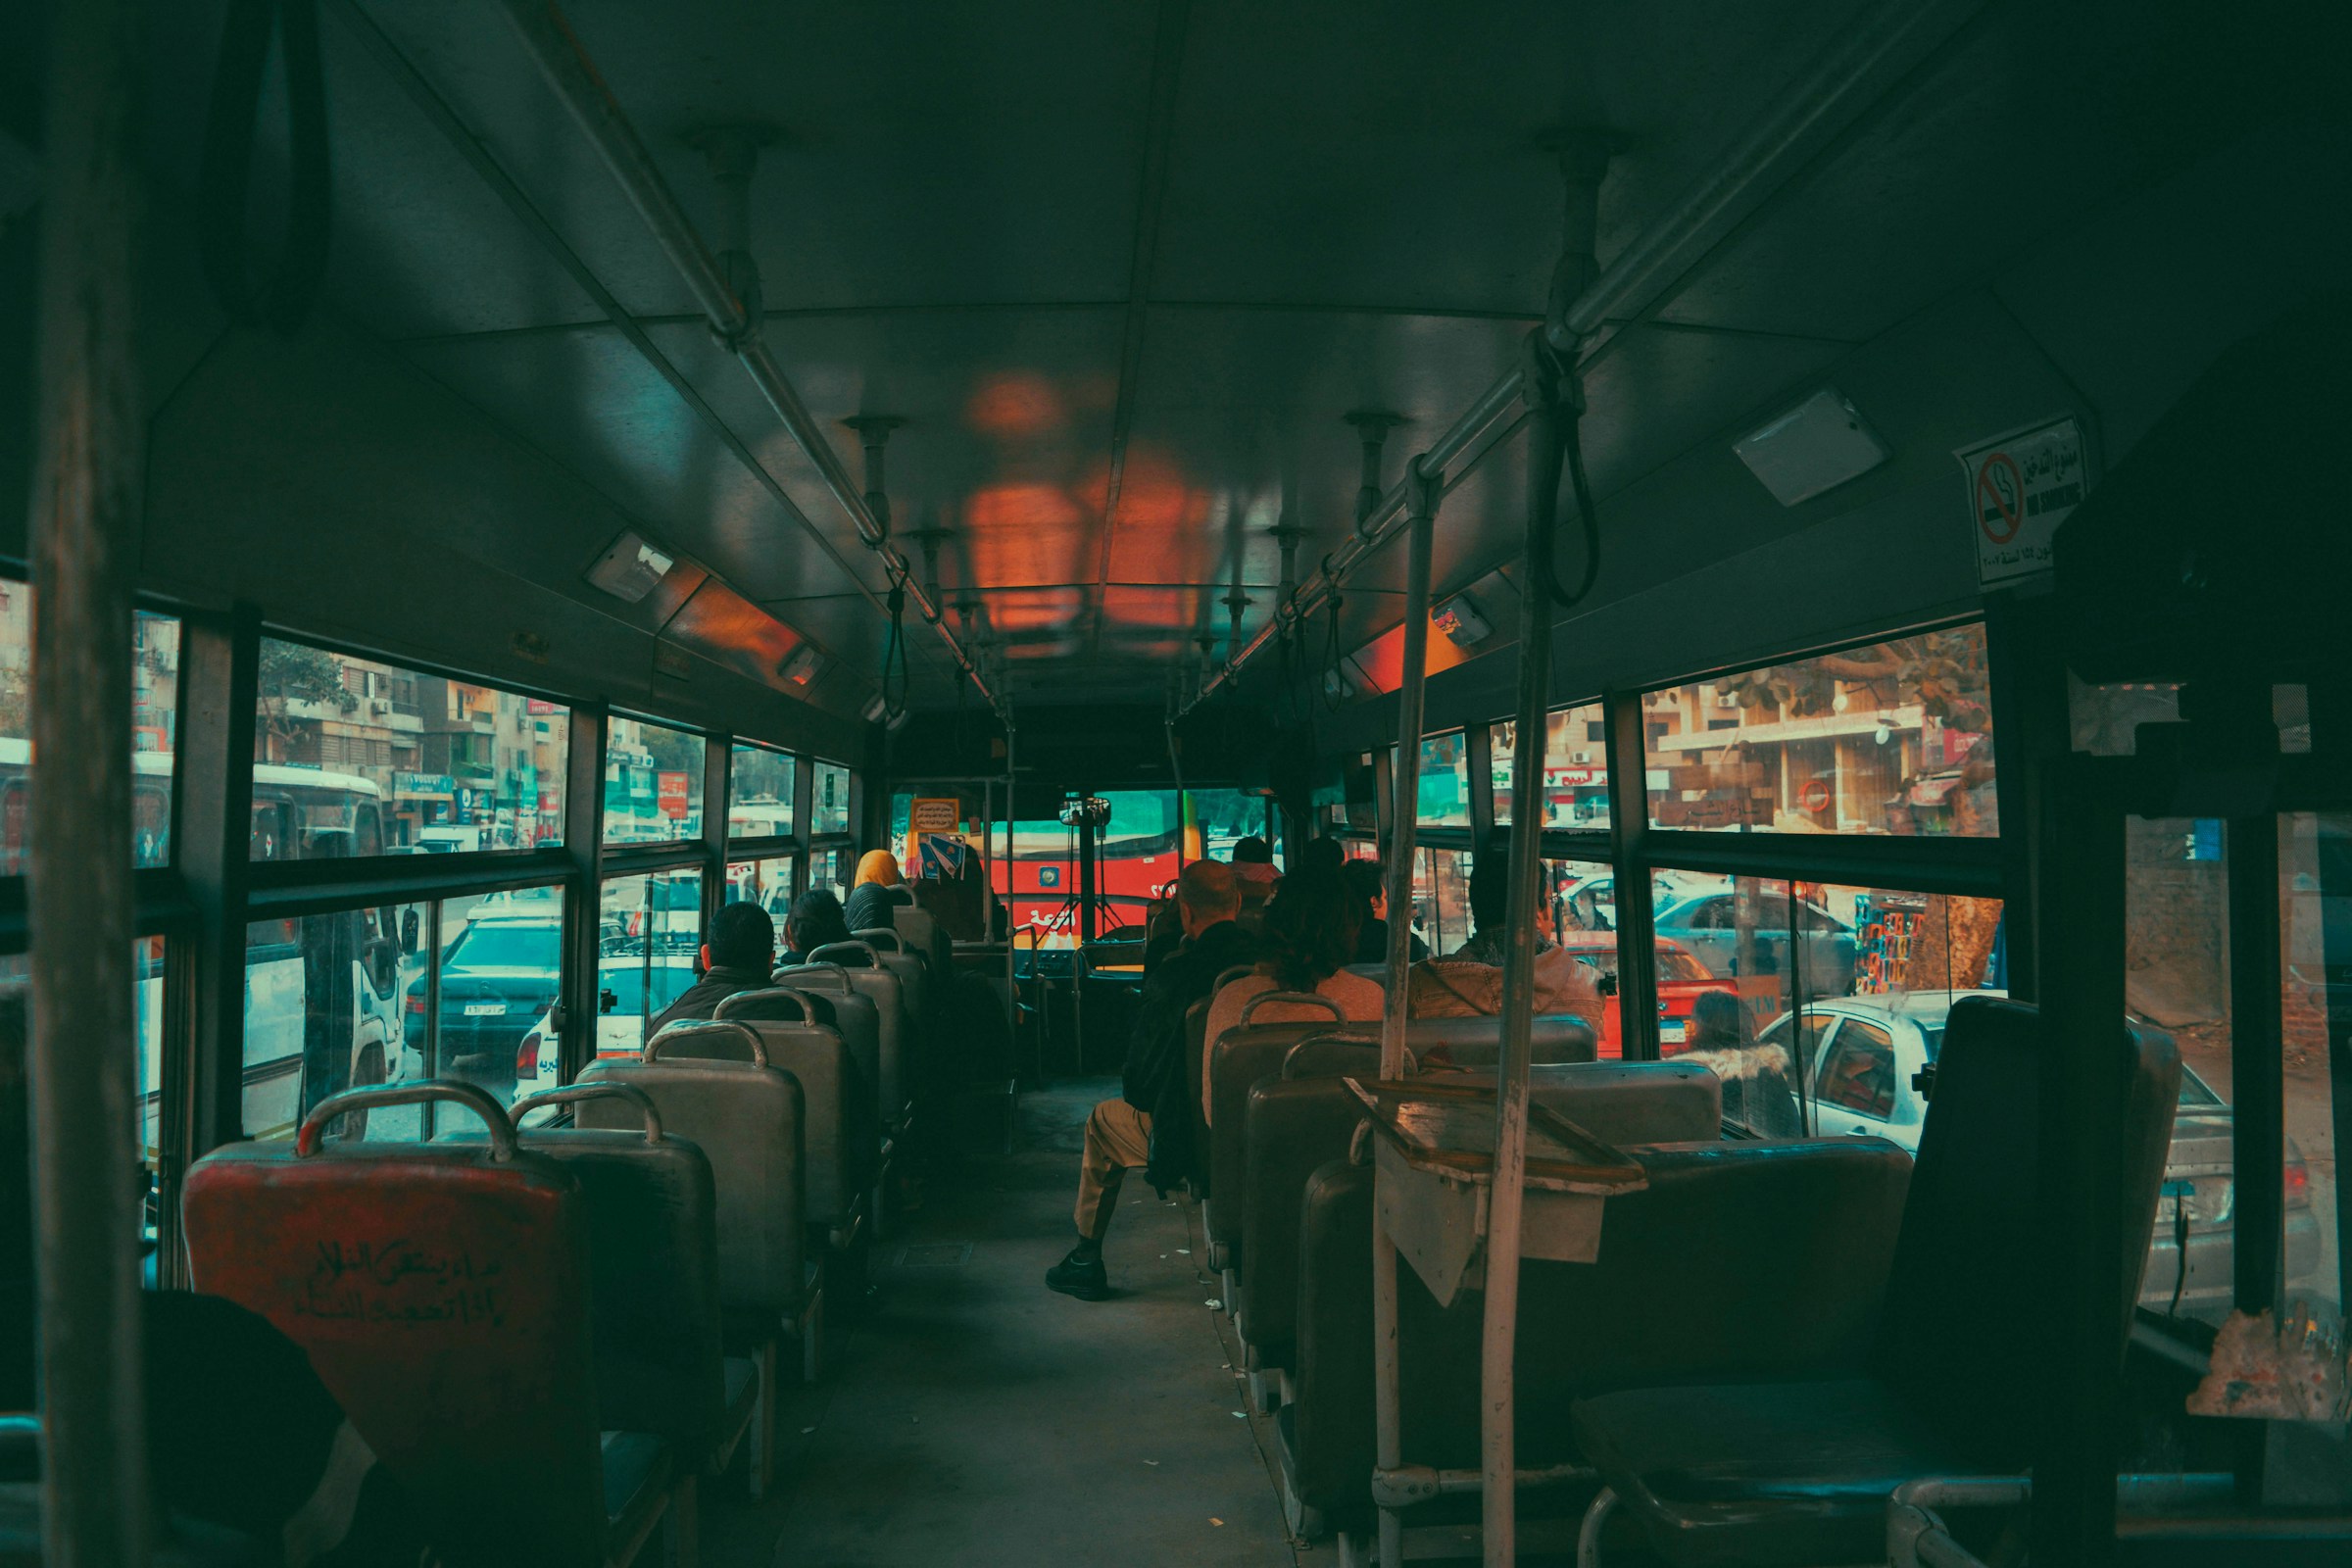 Fahrgäste in einem Bus | Quelle: Pexels